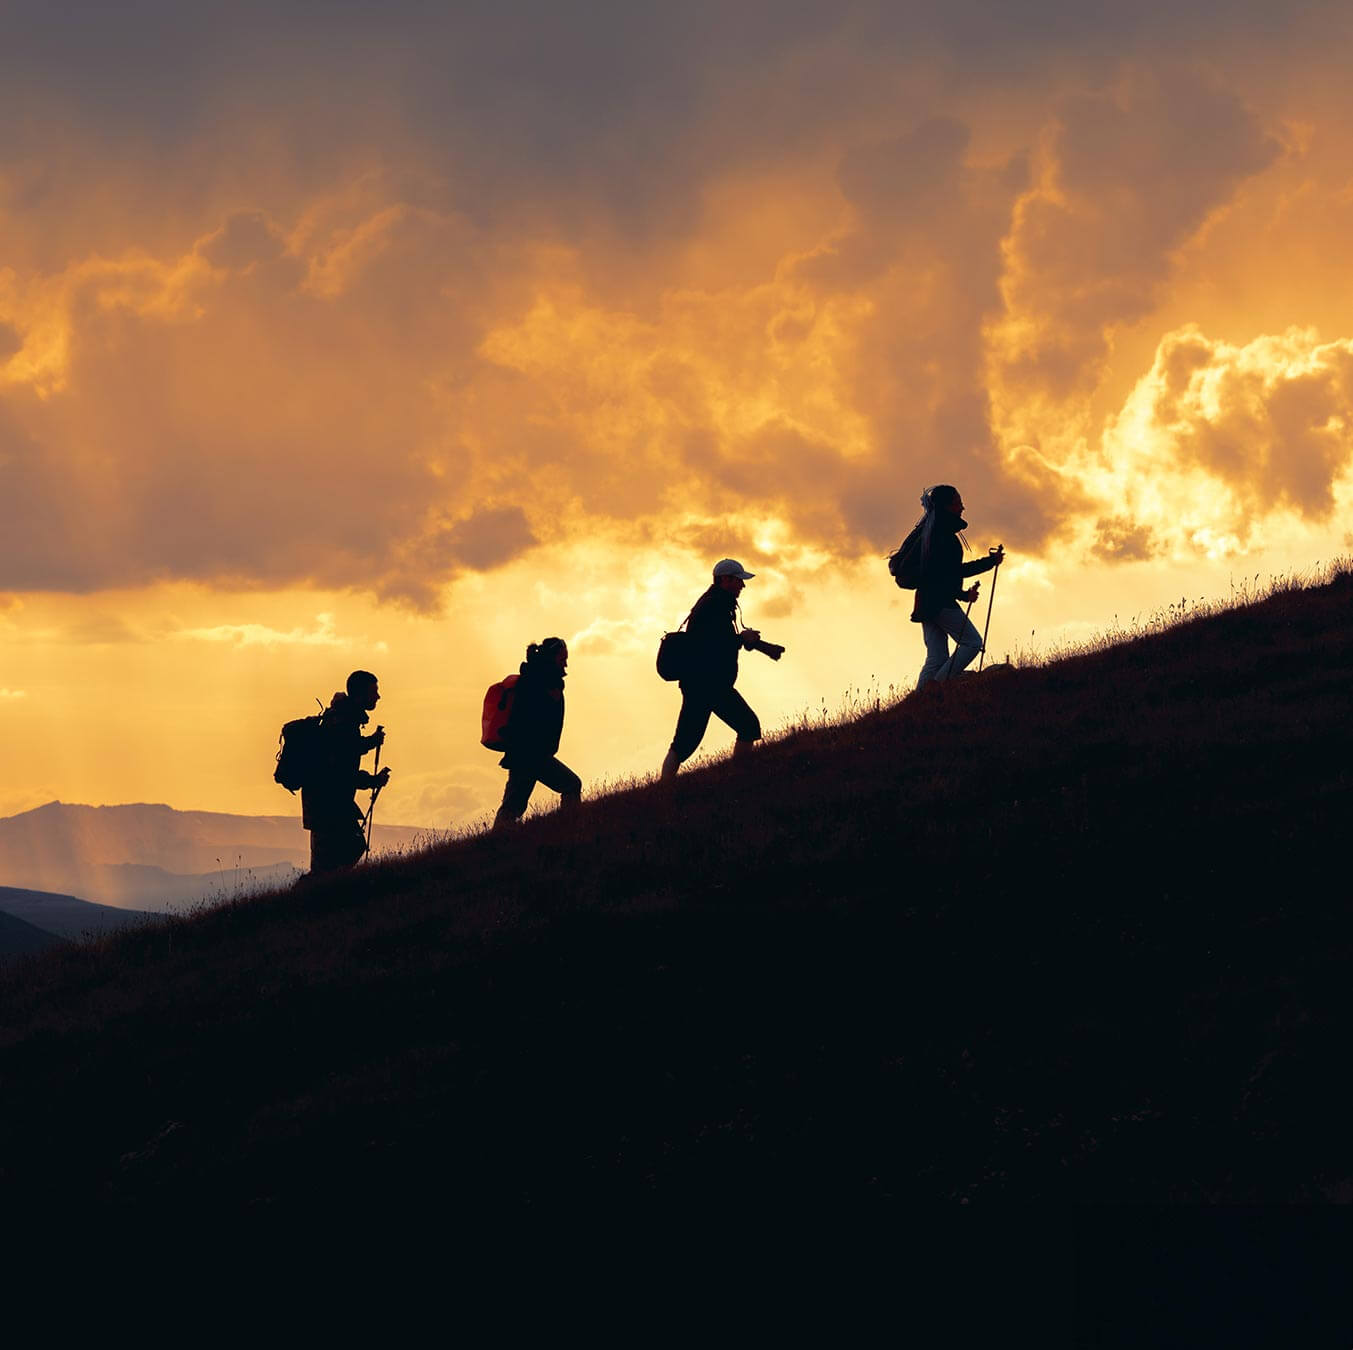 teamwork - hiking up a mountainside